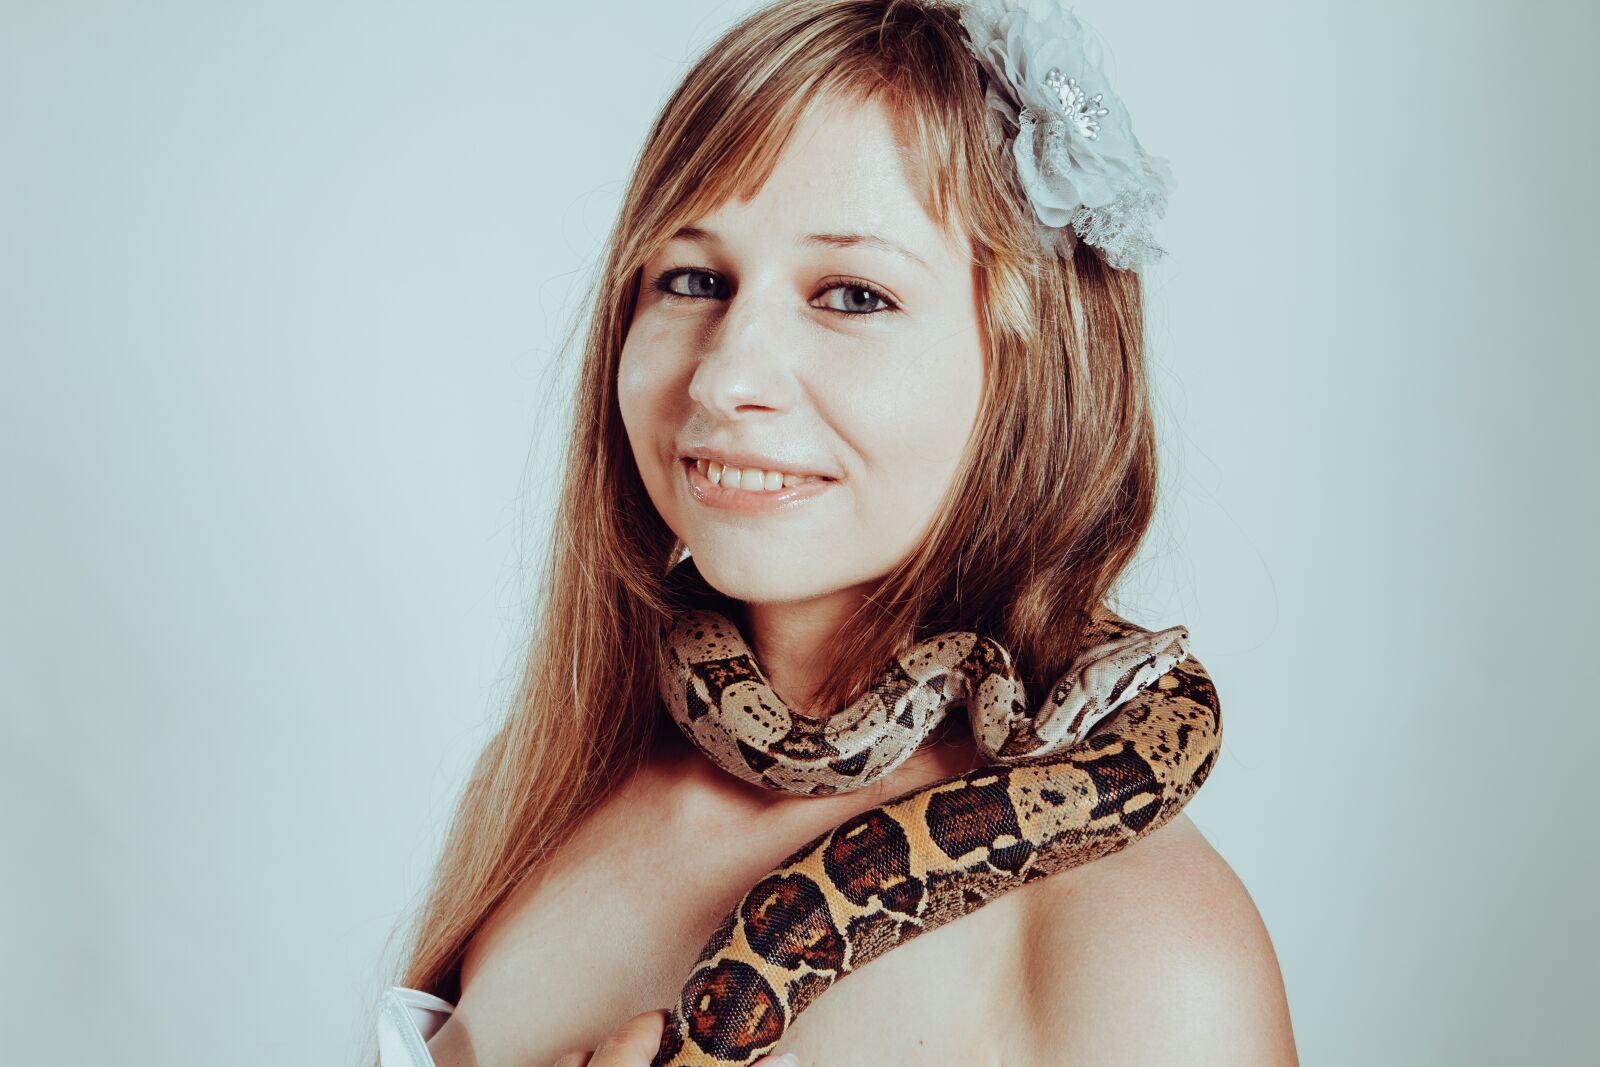 Canon EOS 7D sample photo. Boa constrictor, snake, woman photography